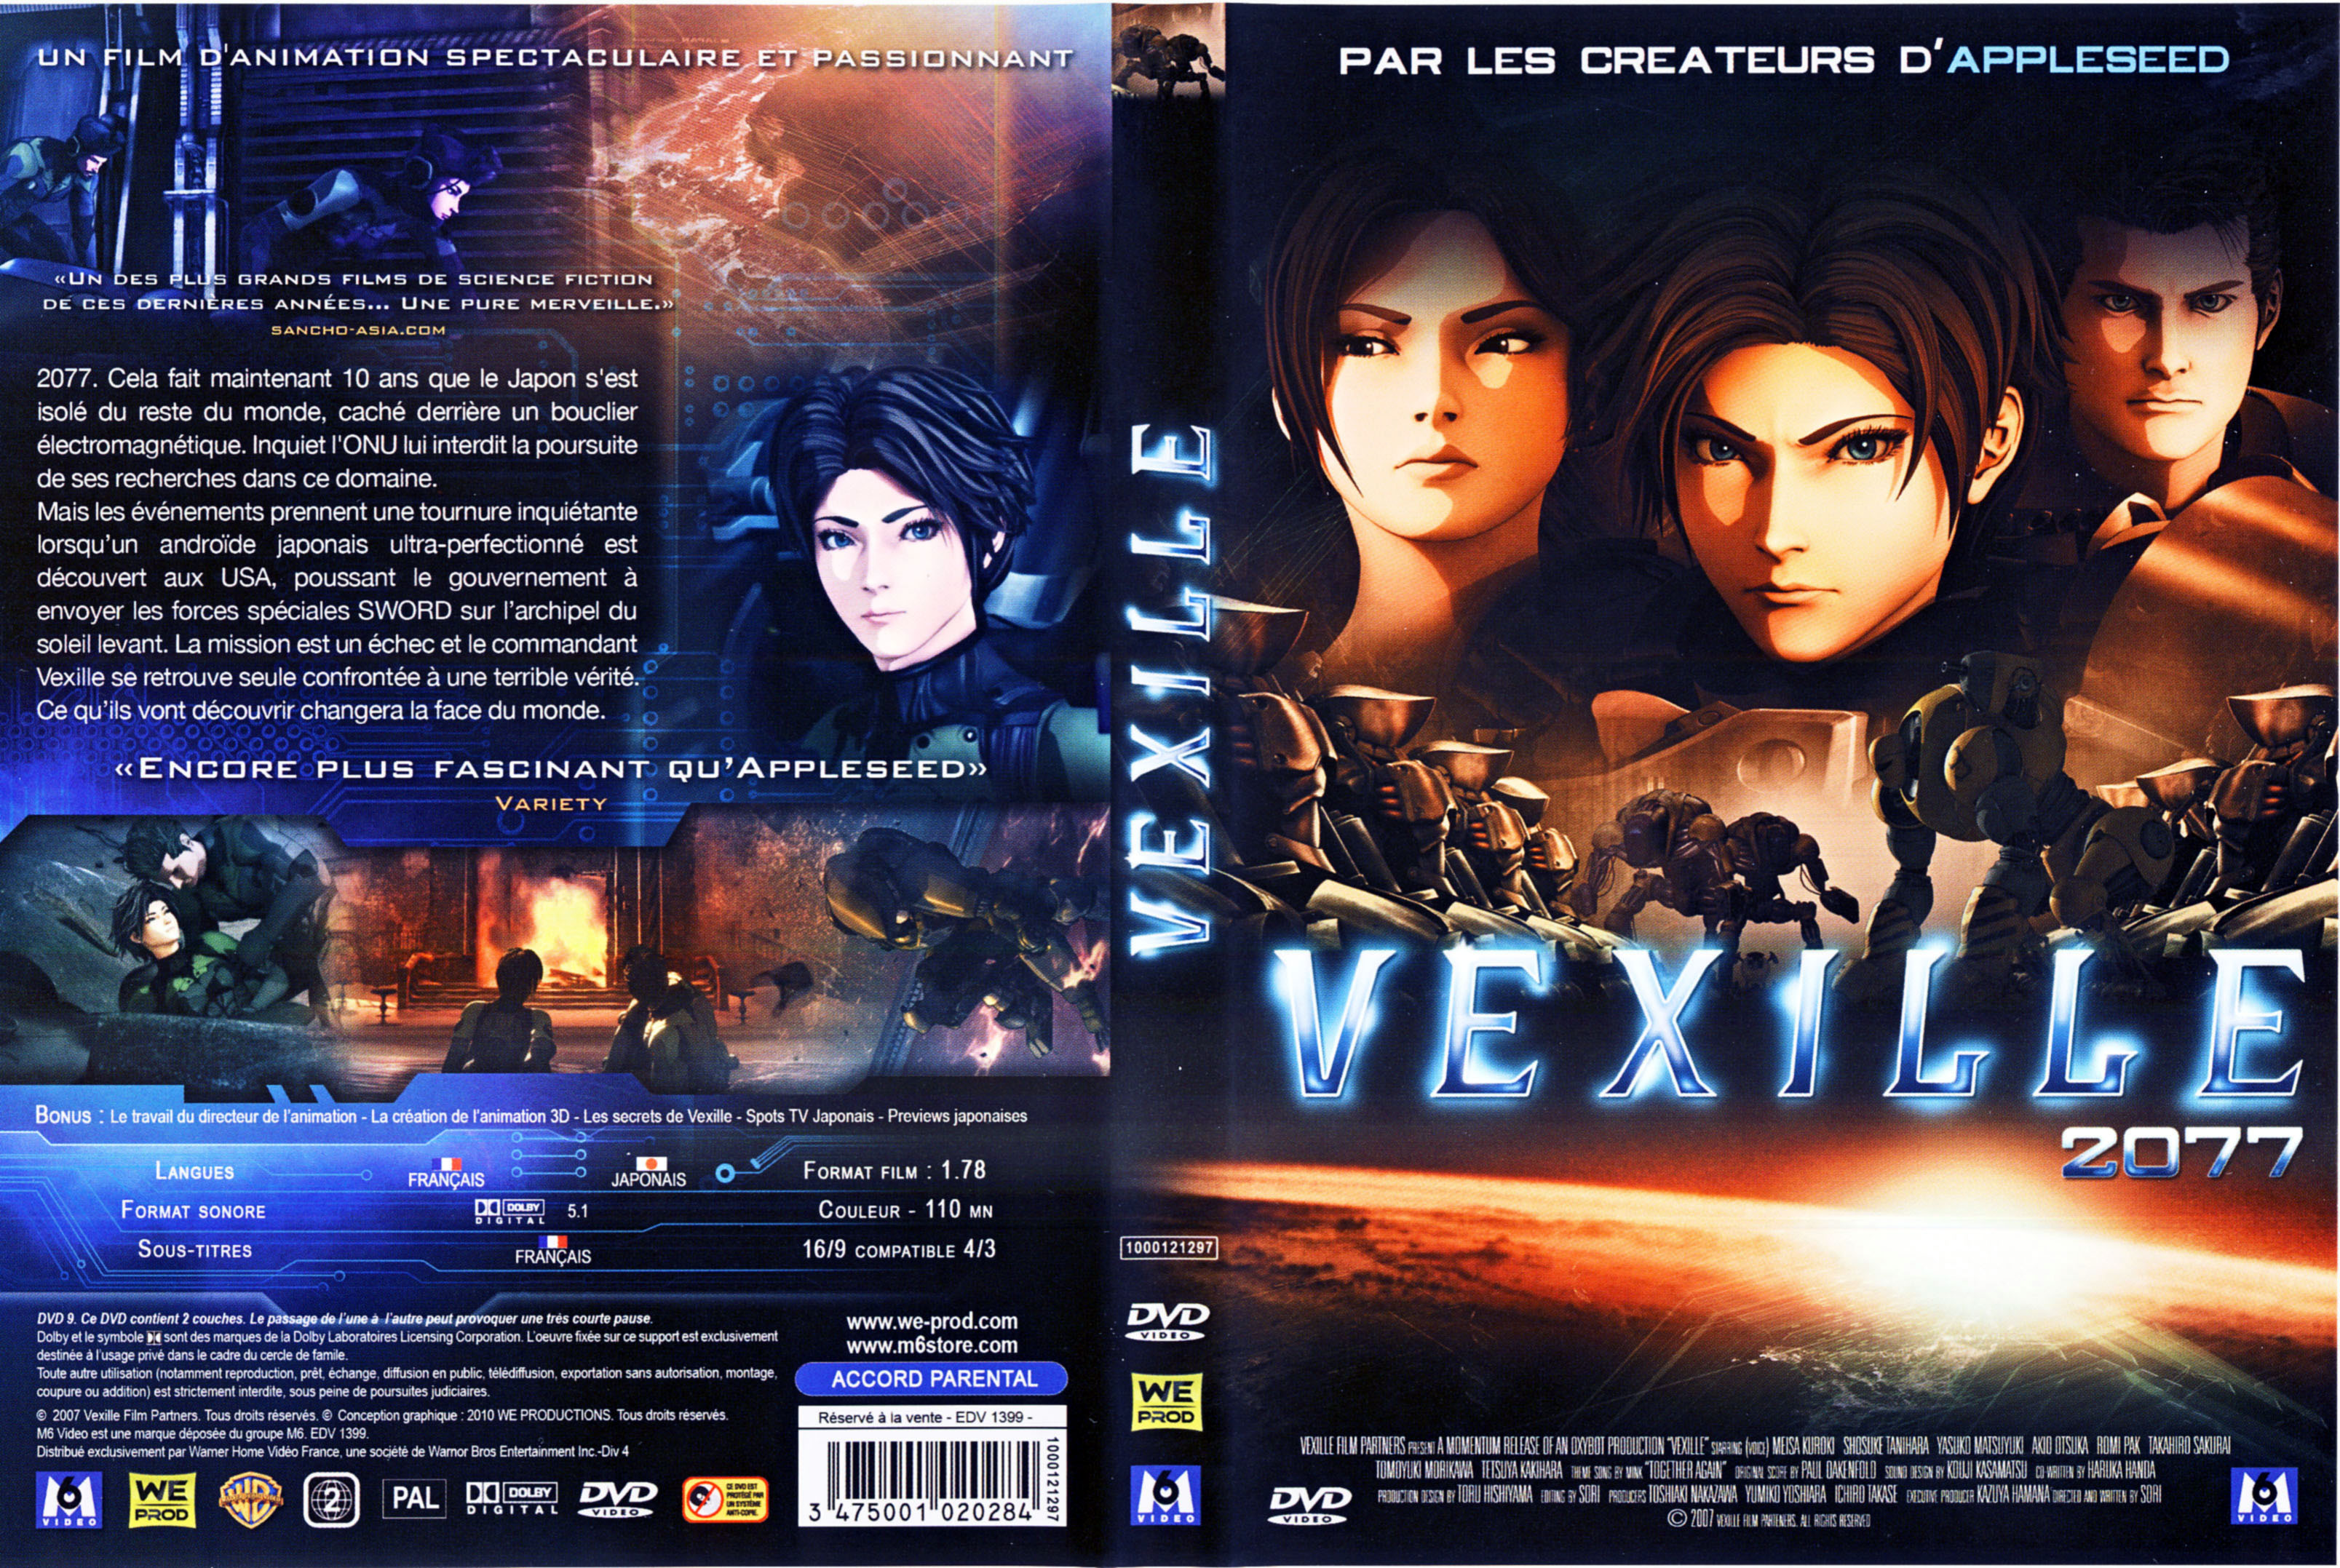 Jaquette DVD Vexille